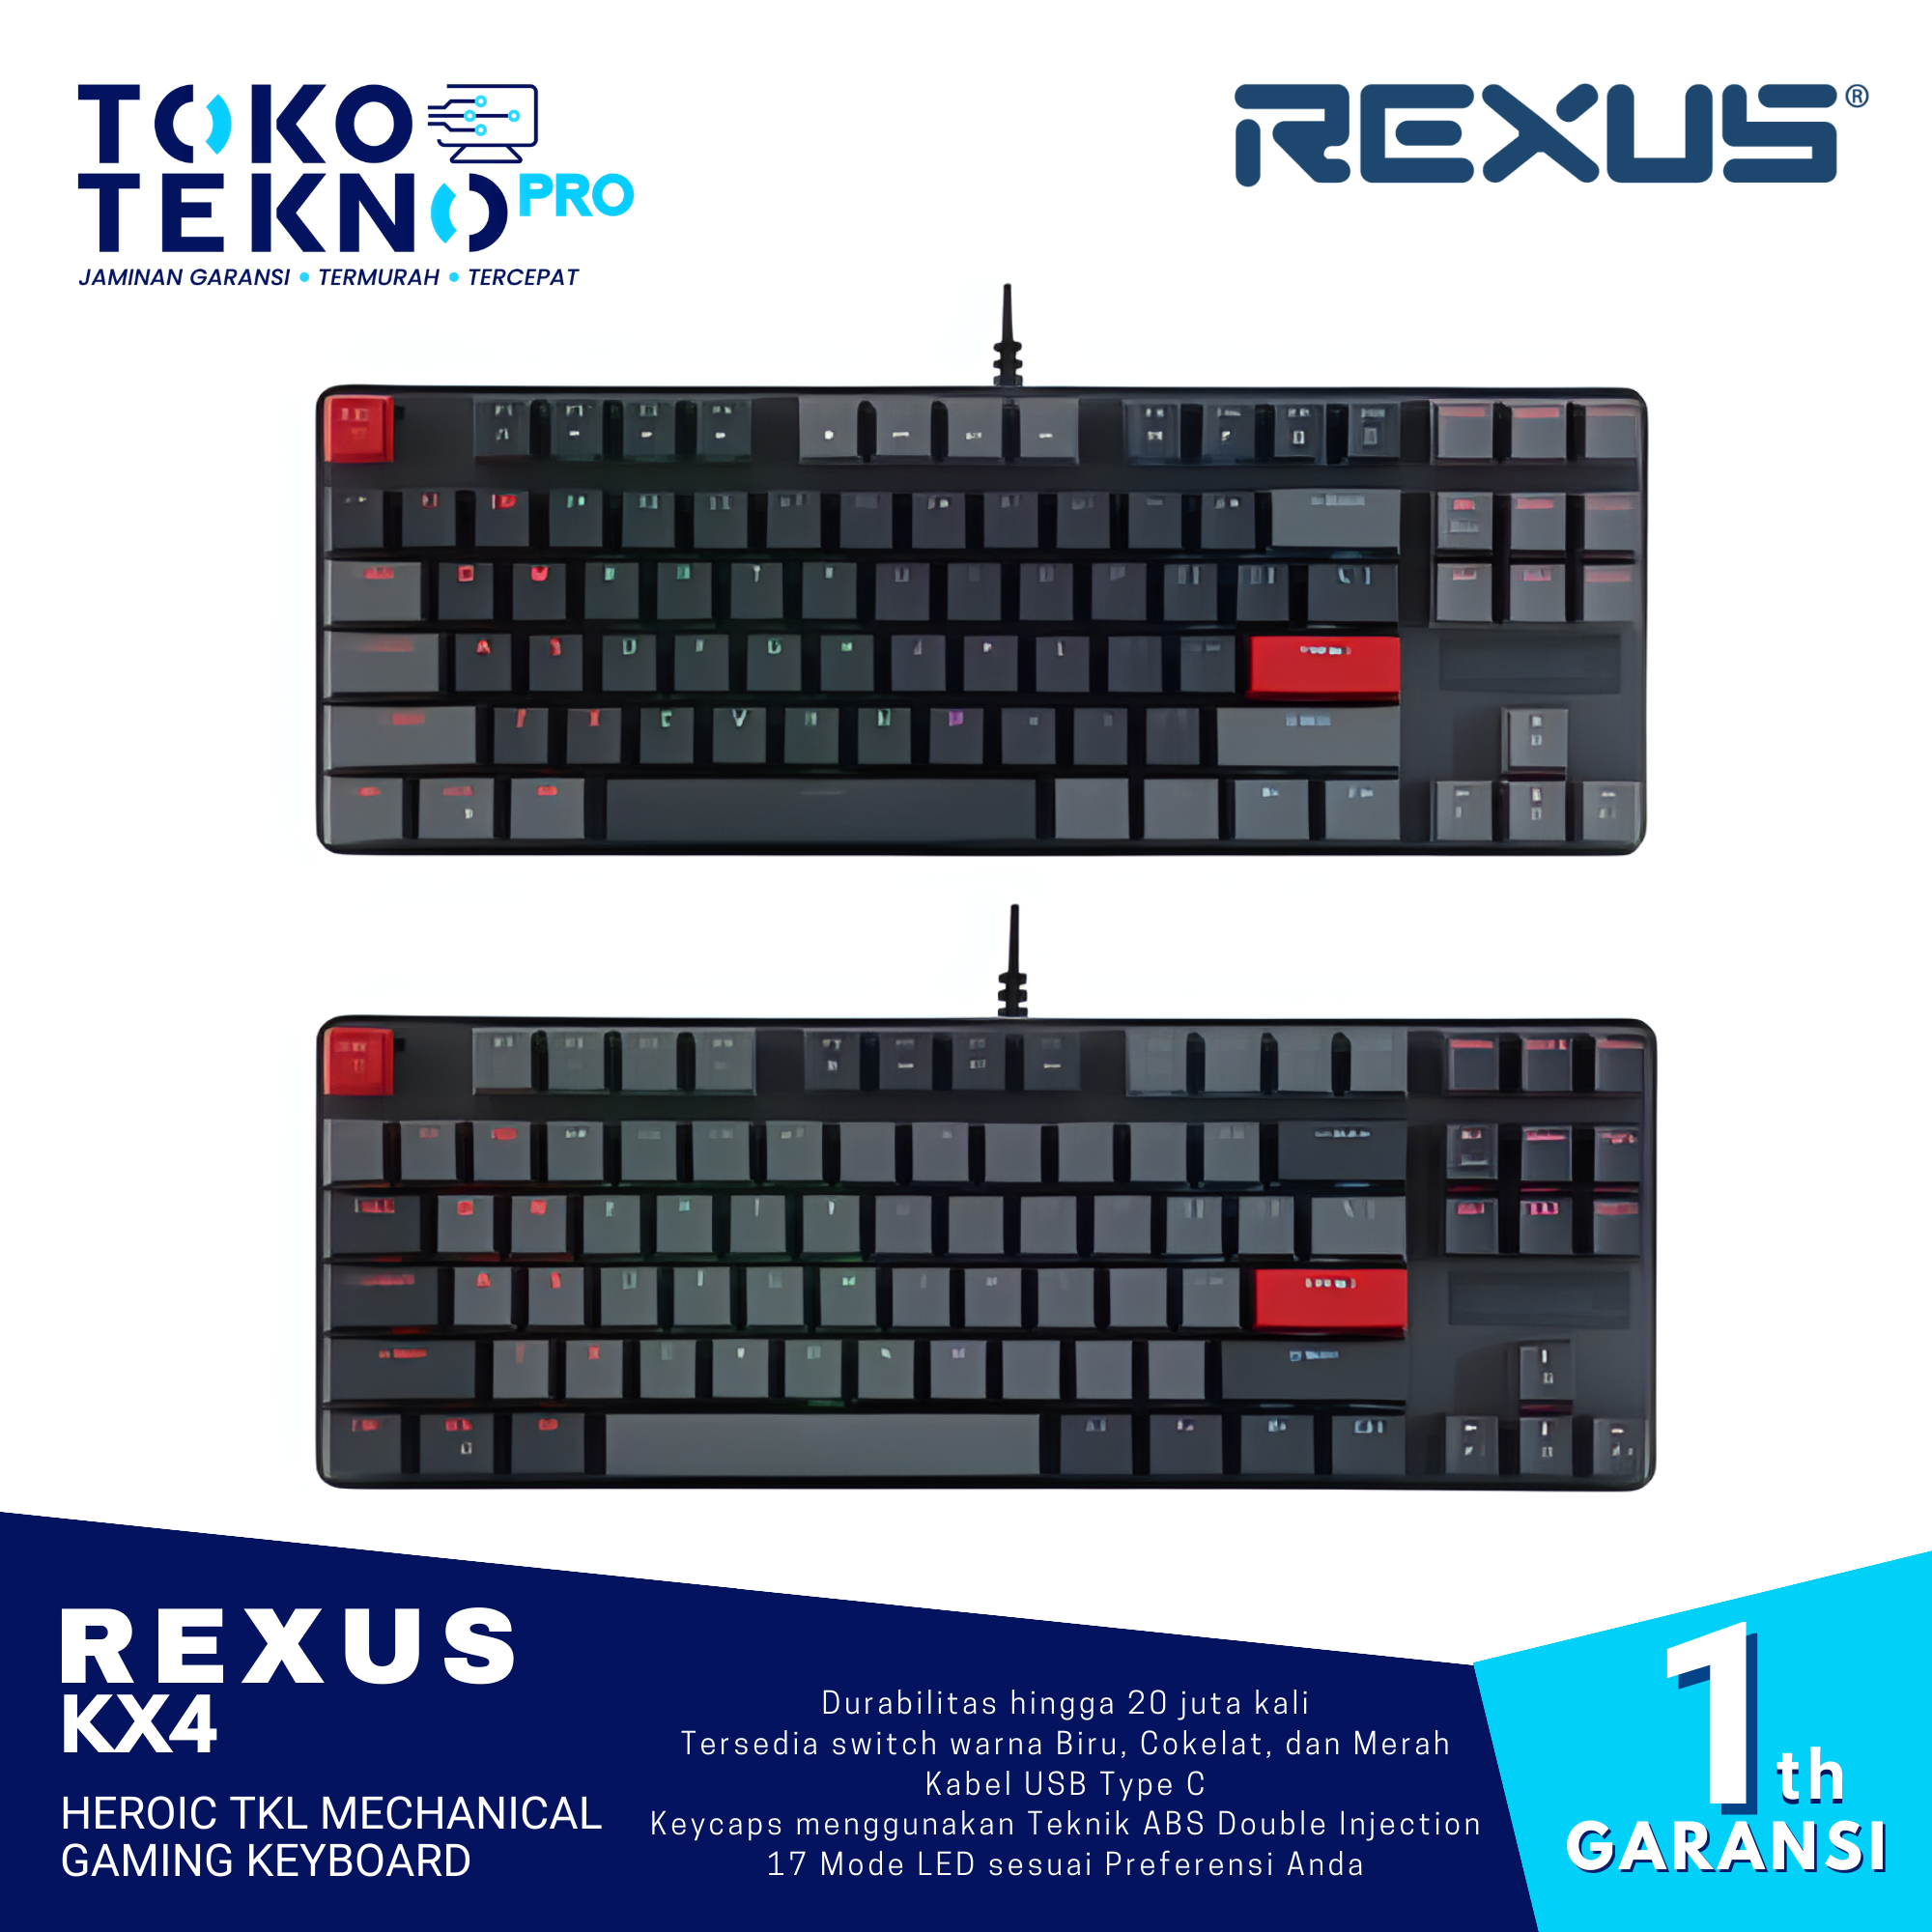 Rexus KX4 Heroic TKL Mechanical Gaming Keyboard